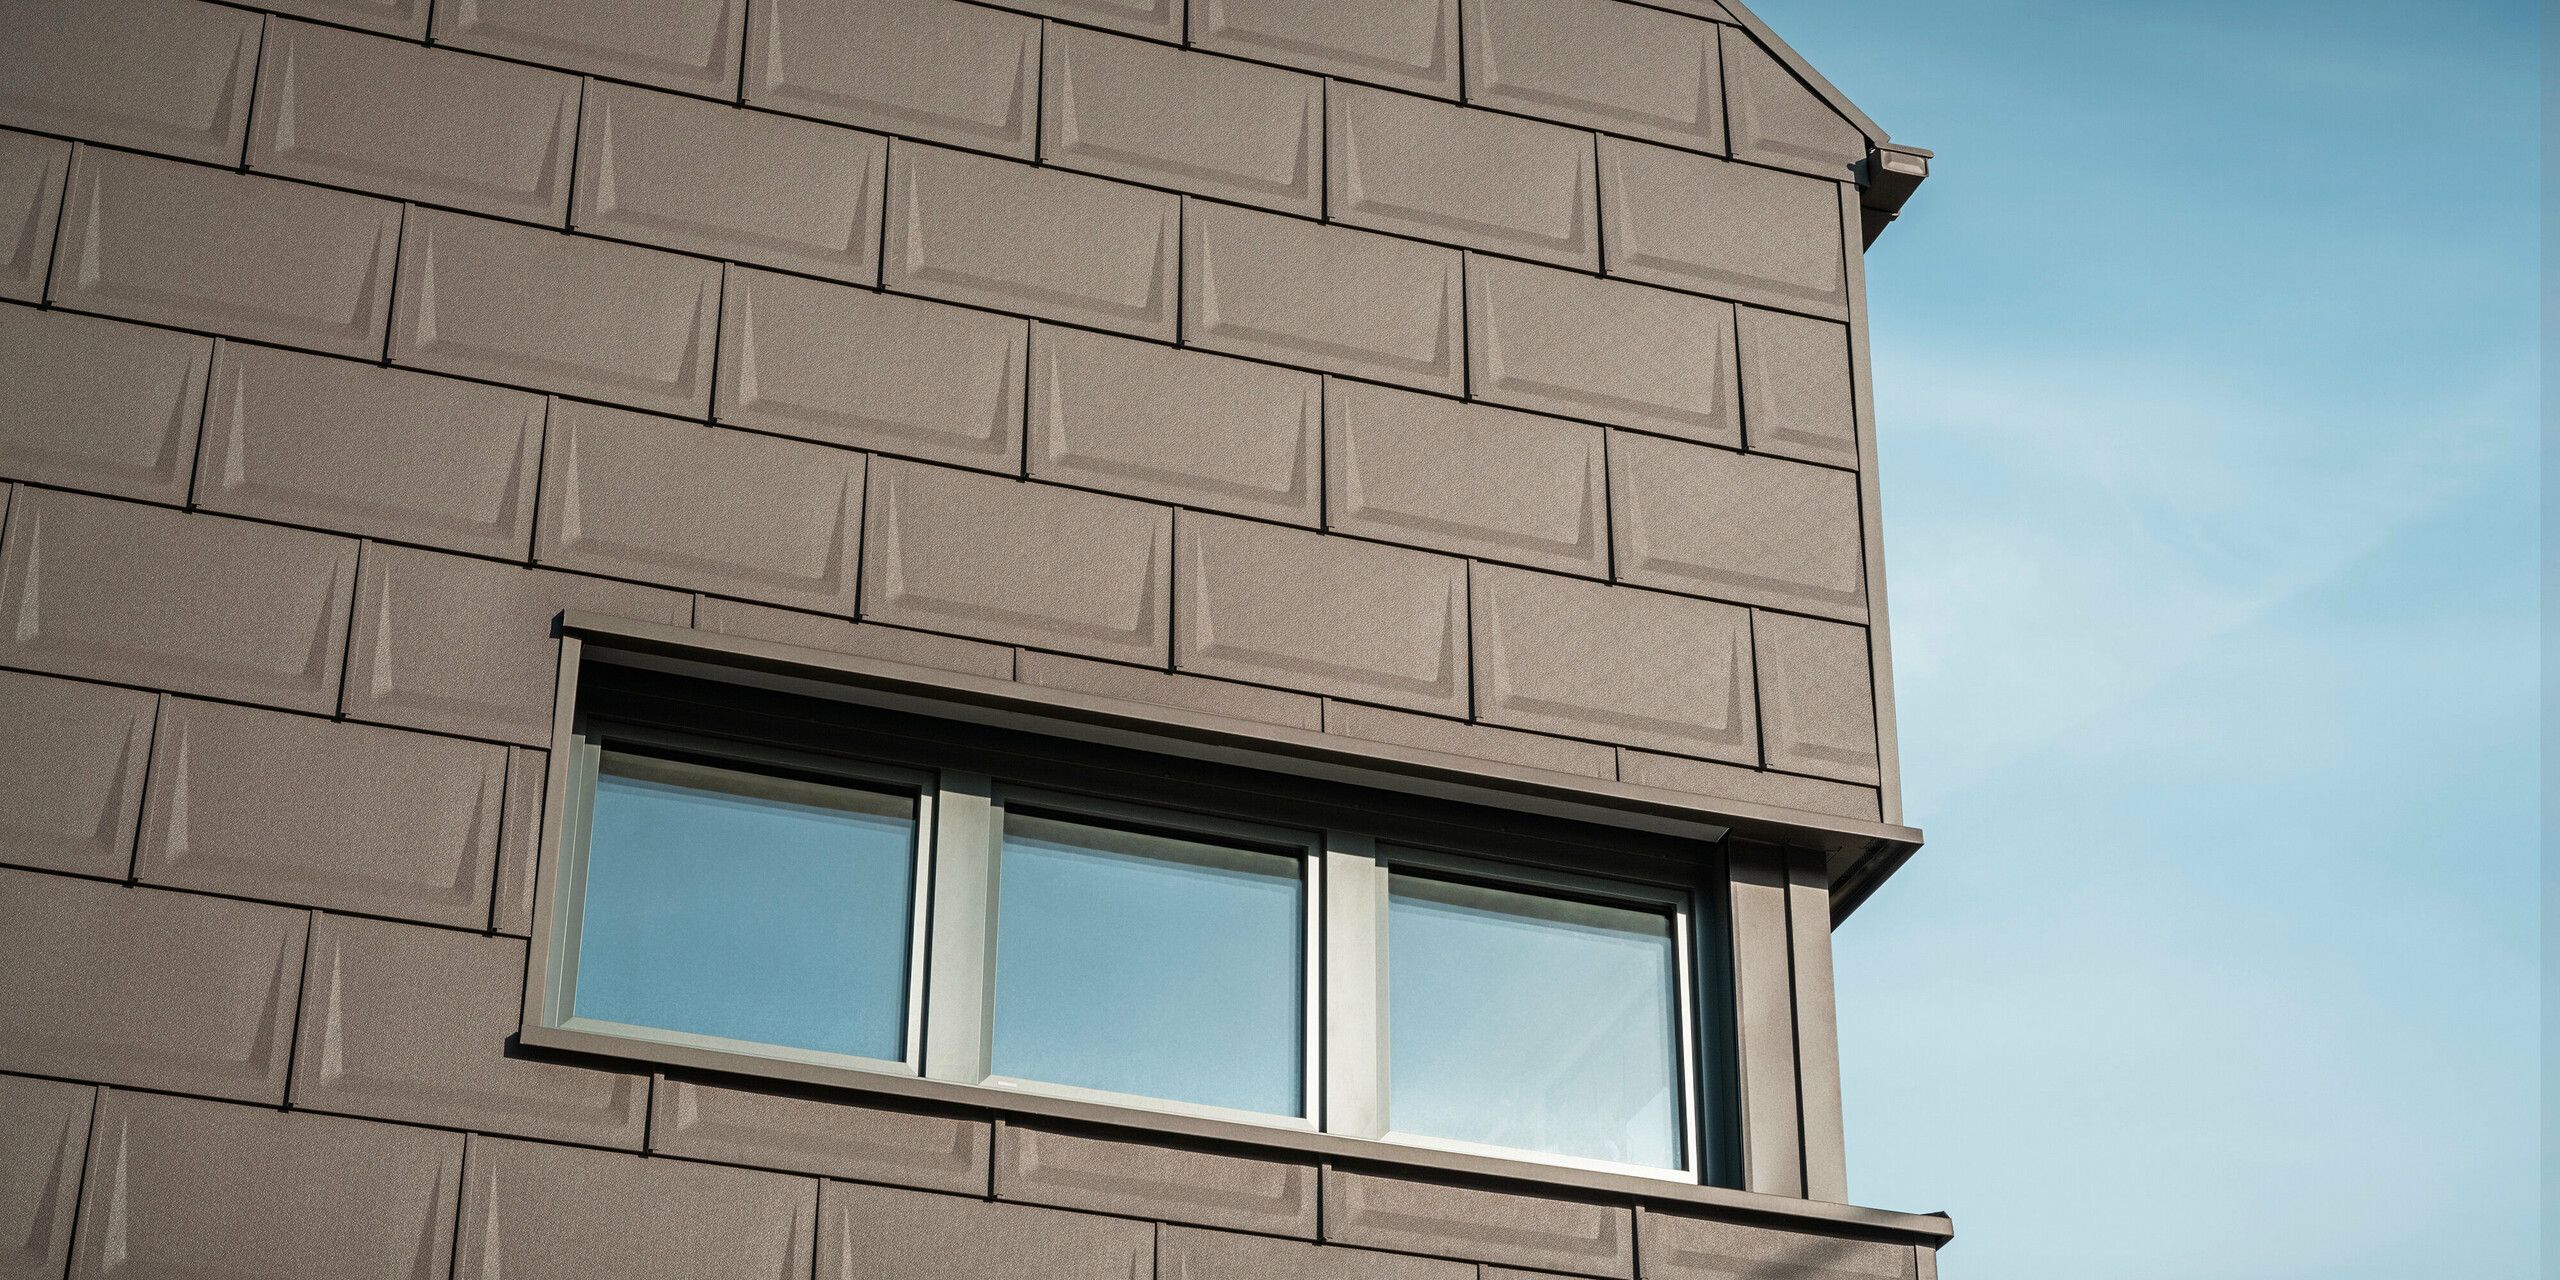 Nahaufnahme der Fassade eines Hauses in Neukirchen, Österreich, gestaltet mit der innovativen PREFA Dachplatte R.16 in braun P.10, die als Sonderbaulösung für die Dach- und Fassadengestaltung des Obergeschosses eingesetzt wird. Diese einzigartige Anwendung sorgt für ein harmonisches und ästhetisches Erscheinungsbild und unterstreicht die Vielseitigkeit der PREFA Aluminiumprodukte. Die einheitliche Farbgebung und das durchdachte Gestaltungskonzept des Gebäudes unterstreichen die vielseitigen Gestaltungsmöglichkeiten von PREFA.